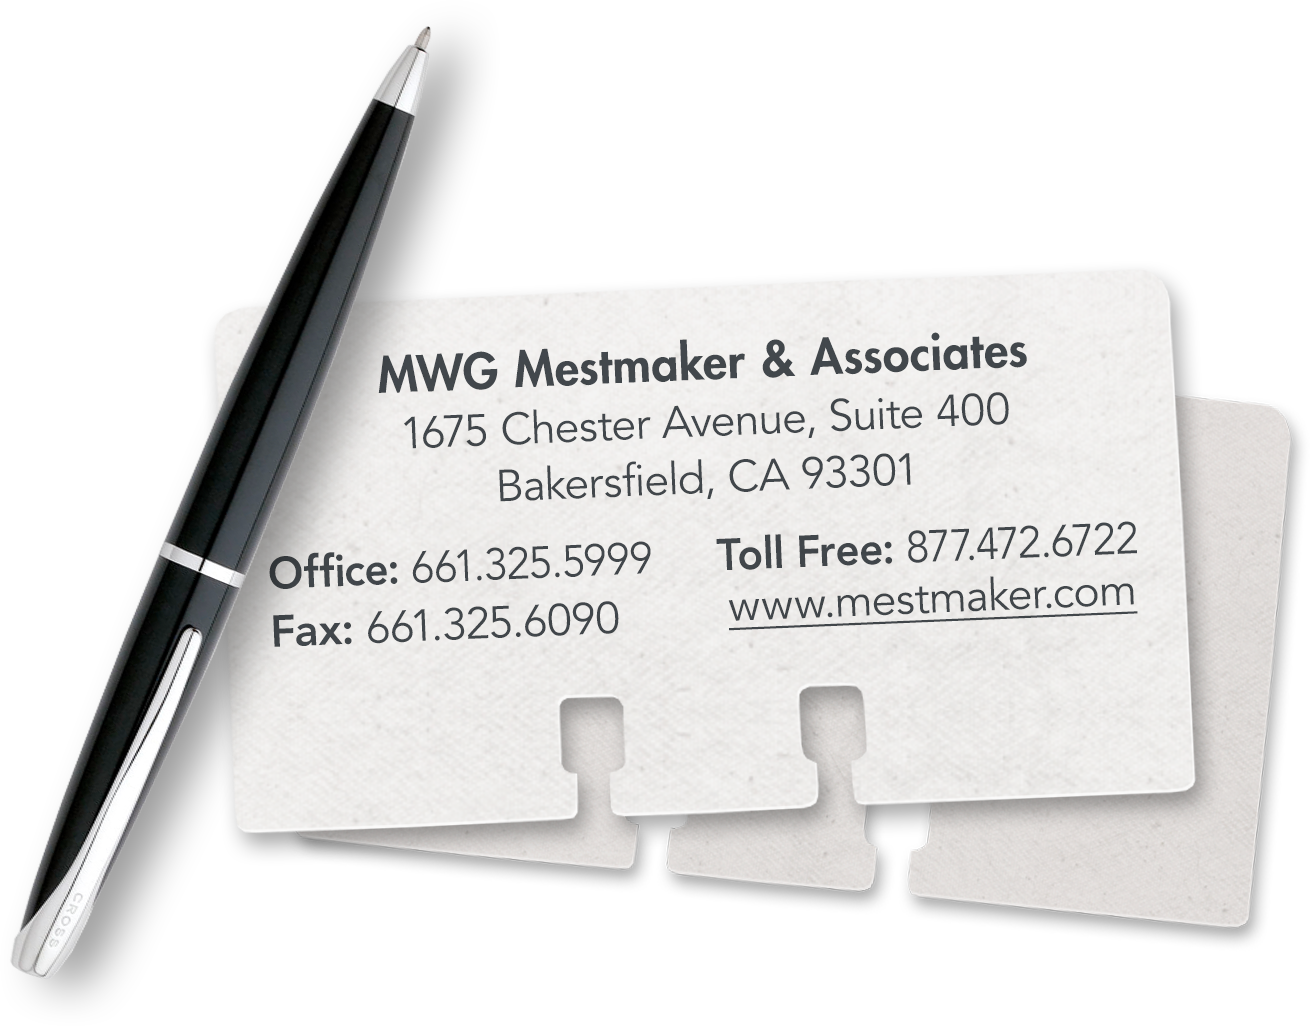 Thomas E. Mestmaker Contact Card